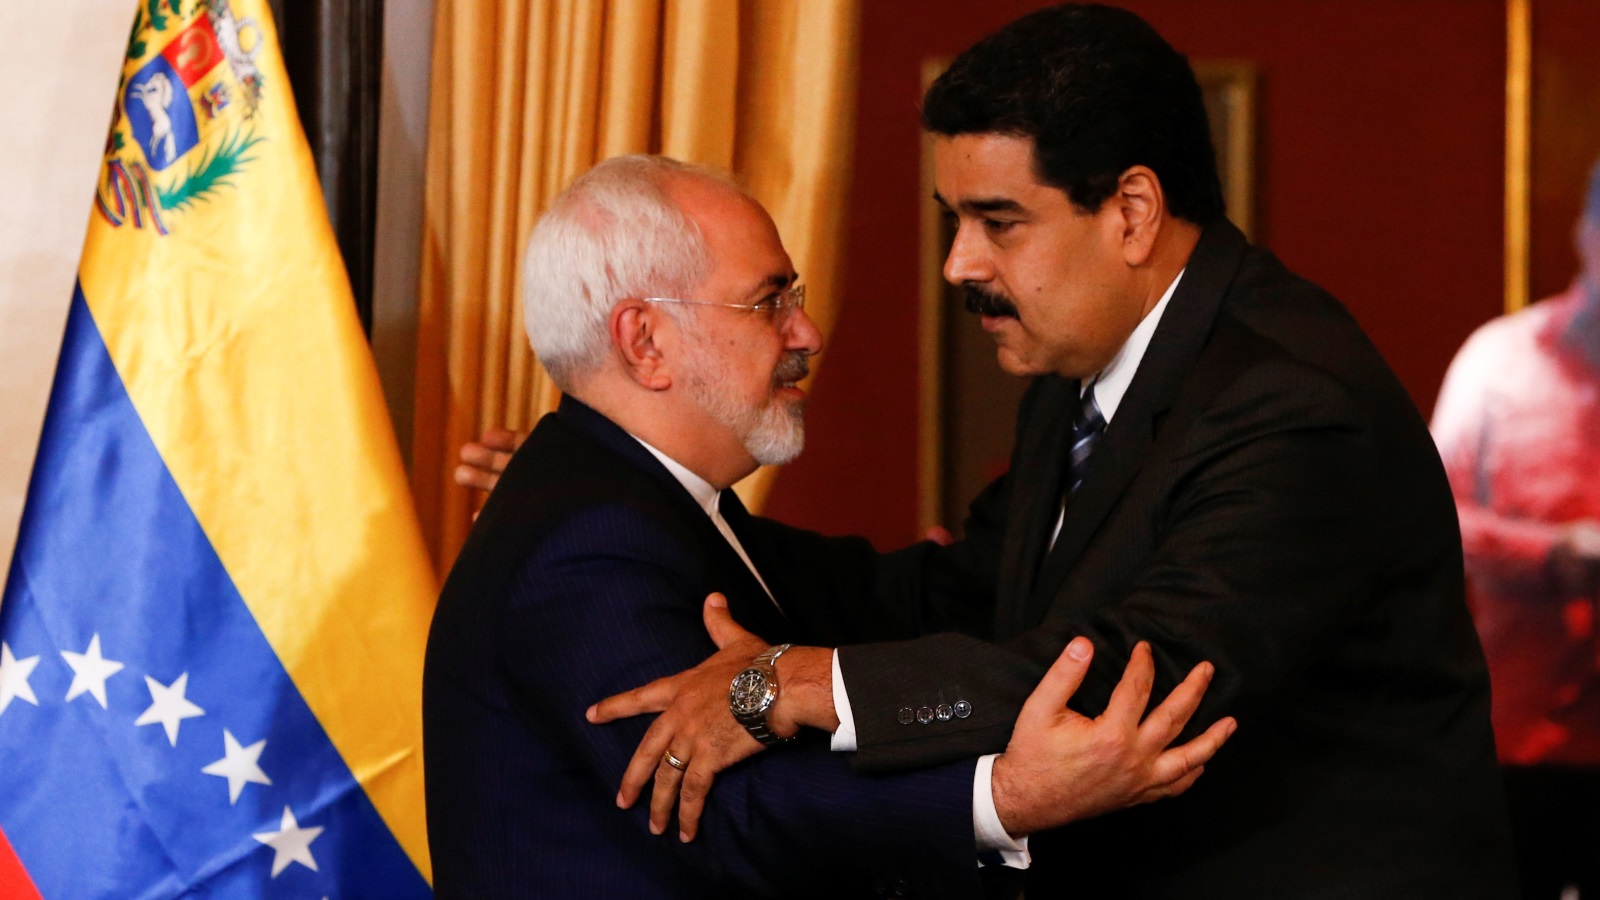 الرئيس الفنزويلي في لقاء يعكس الحميمية مع وزير الخارجية الإيراني